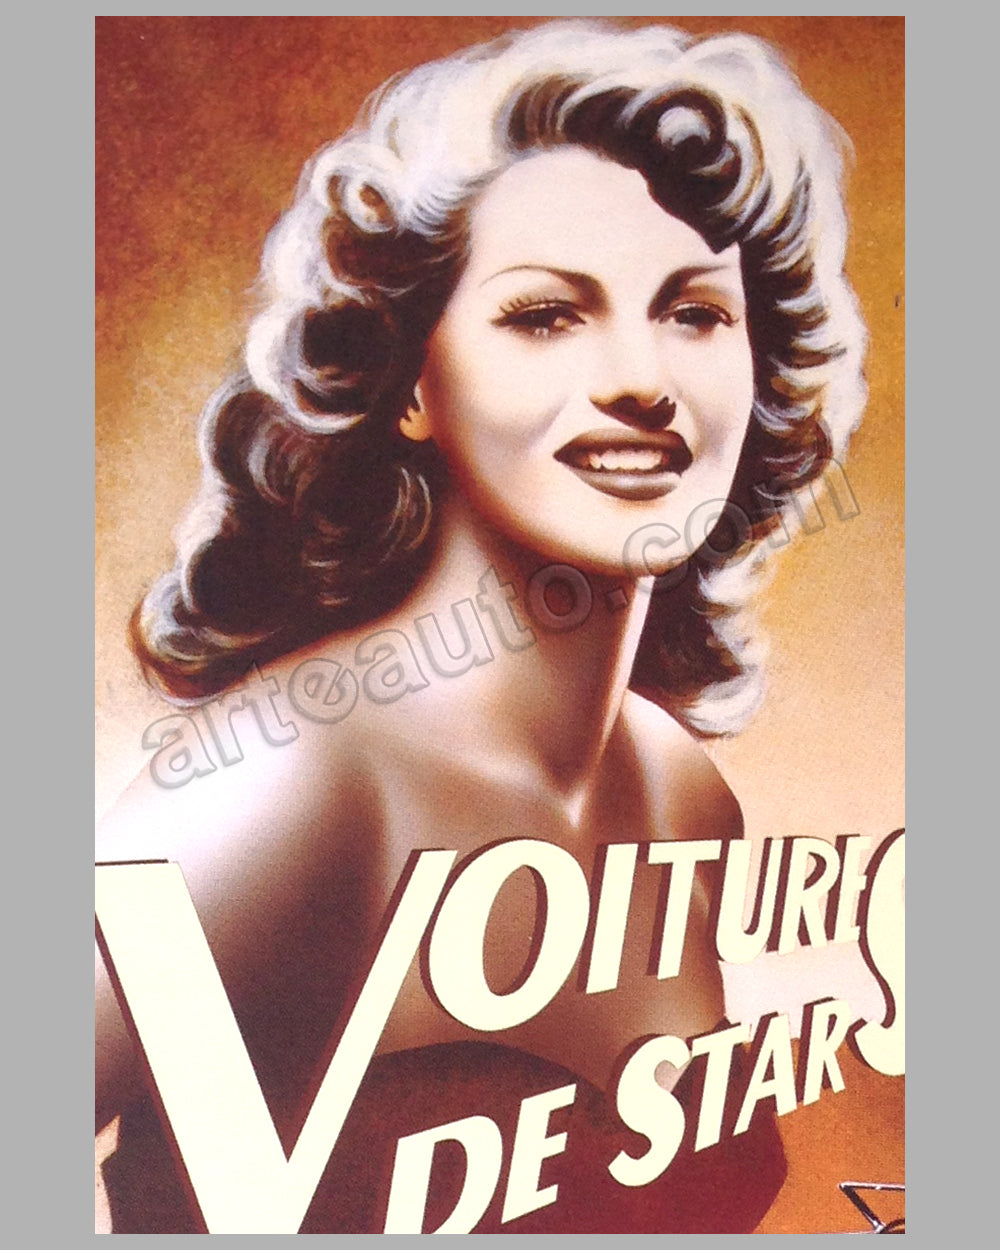 Vintage poster – Concours automobile classiques et Louis Vuitton, Parc de  Bagatelle – Galerie 1 2 3